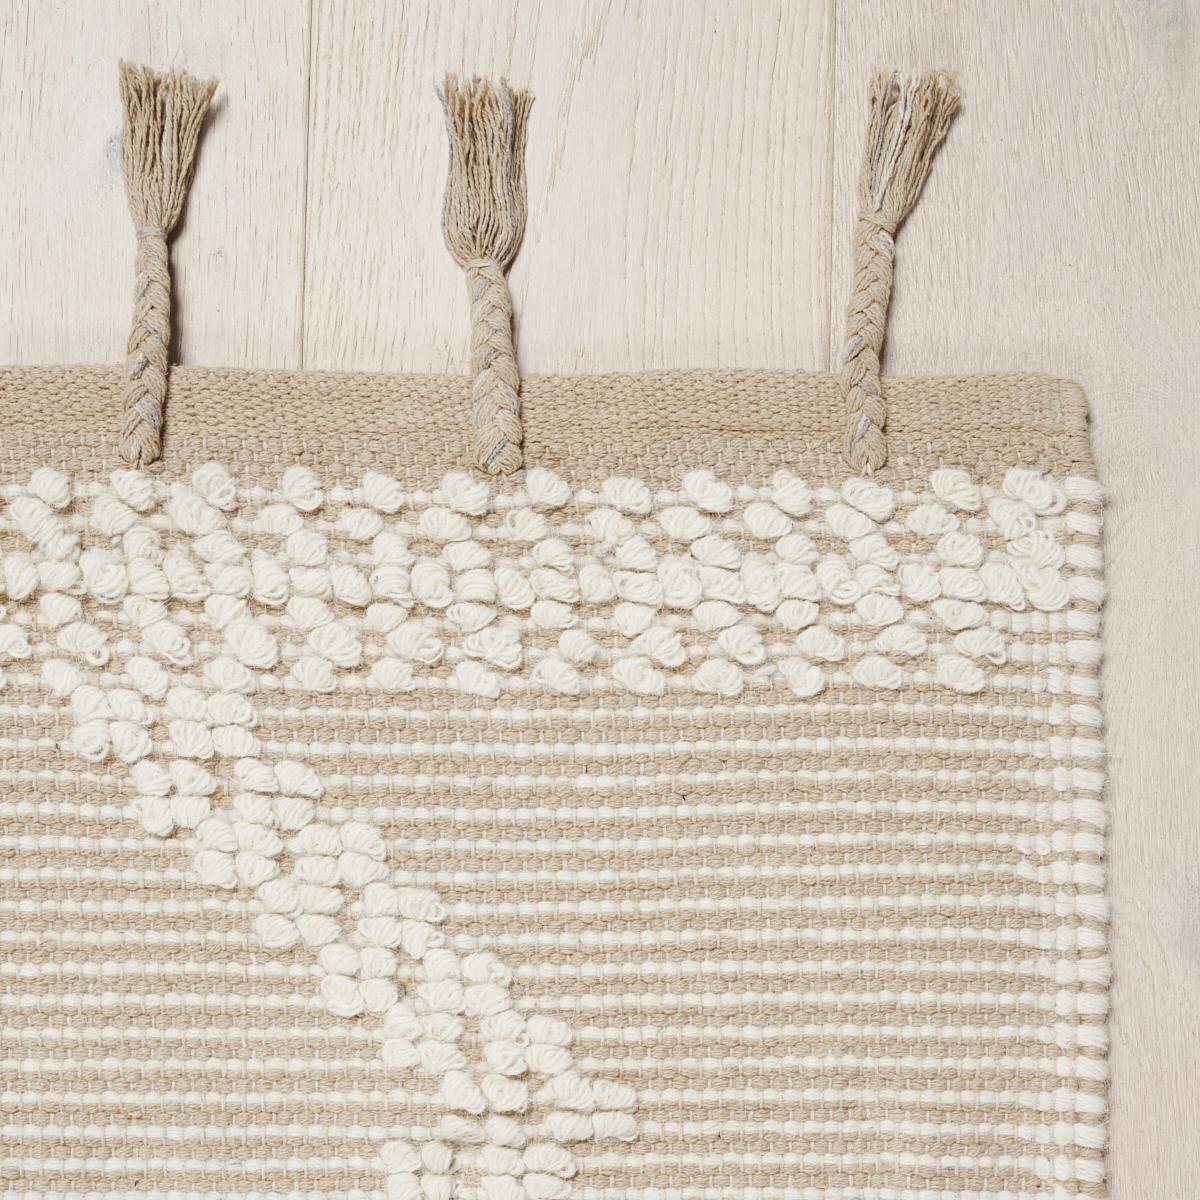 Malta French Knot ist ein dynamischer Streifen aus Wolle und Baumwolle, der auf einem traditionellen Grubenwebstuhl hergestellt wird. Er hat eine schöne Dimension und Textur, die durch Quastenfransen betont wird. Dieses vielseitige geometrische